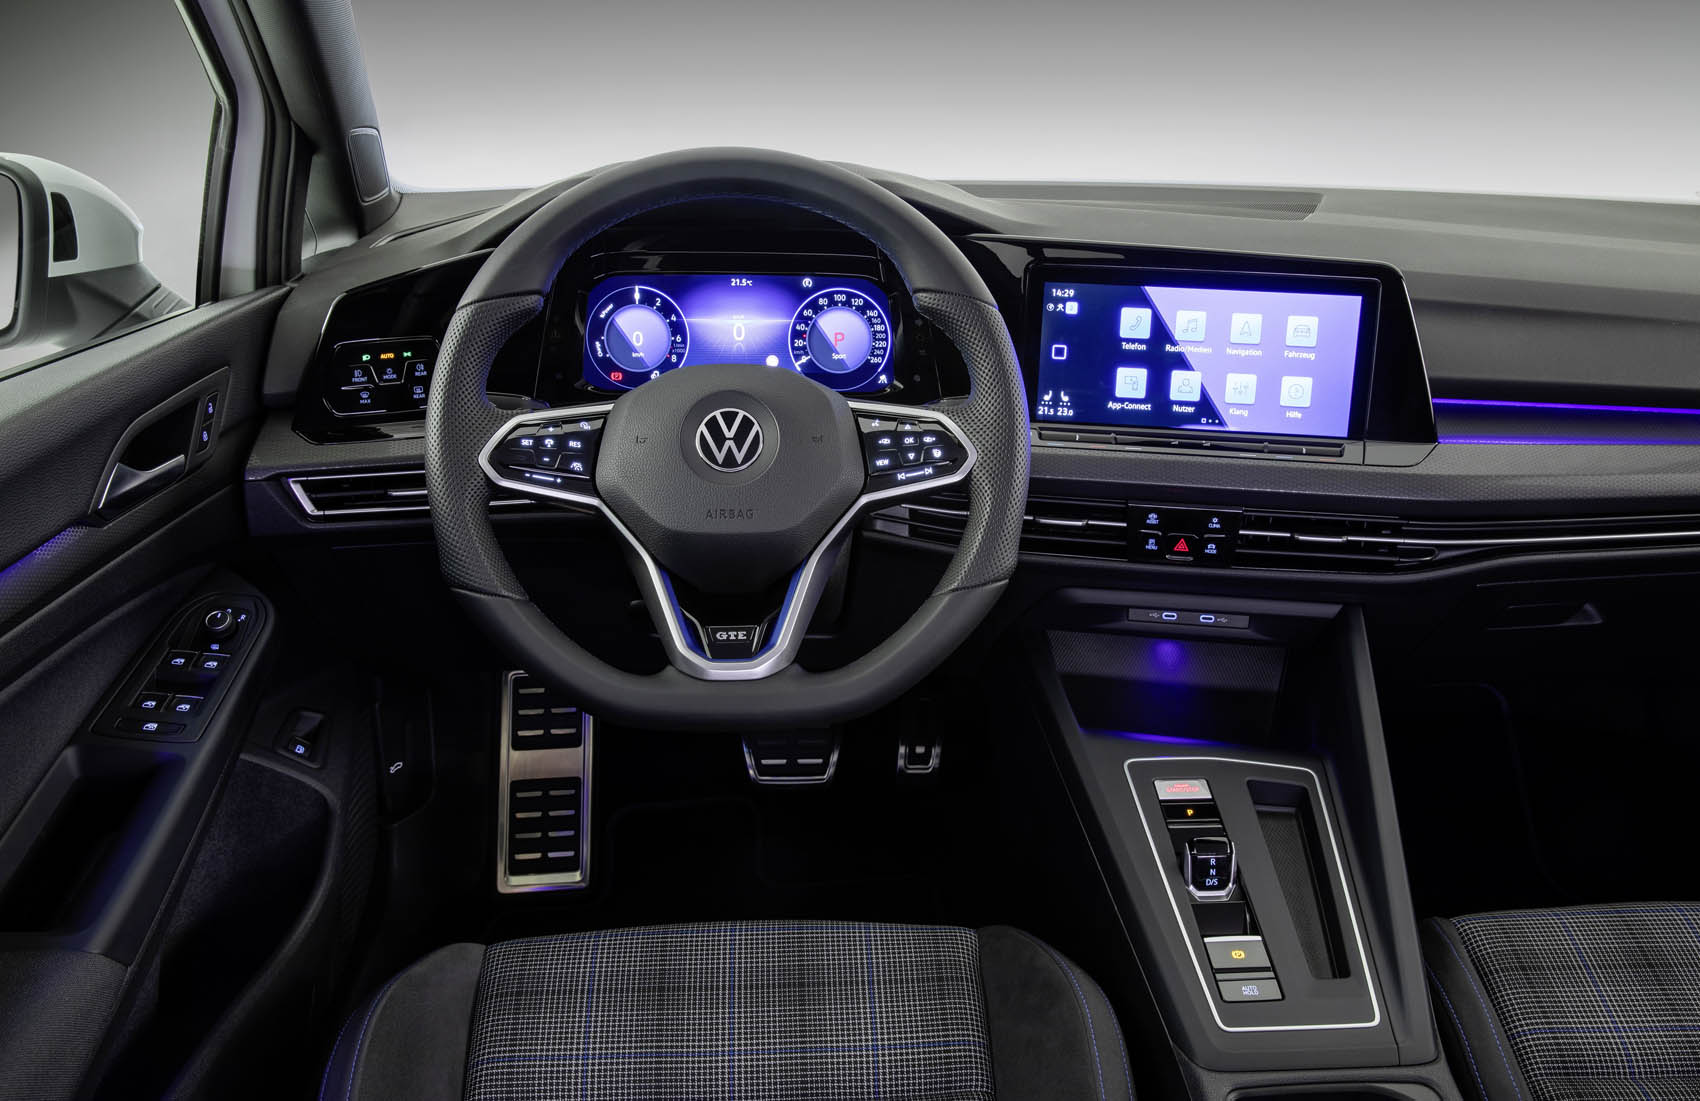 Com um cockpit idêntico ao do GTI, o Volkswagen GTE diferencia-se pela cor azul, também dos pespontos... além de algumas funcionalidades específicas desta versão híbrida